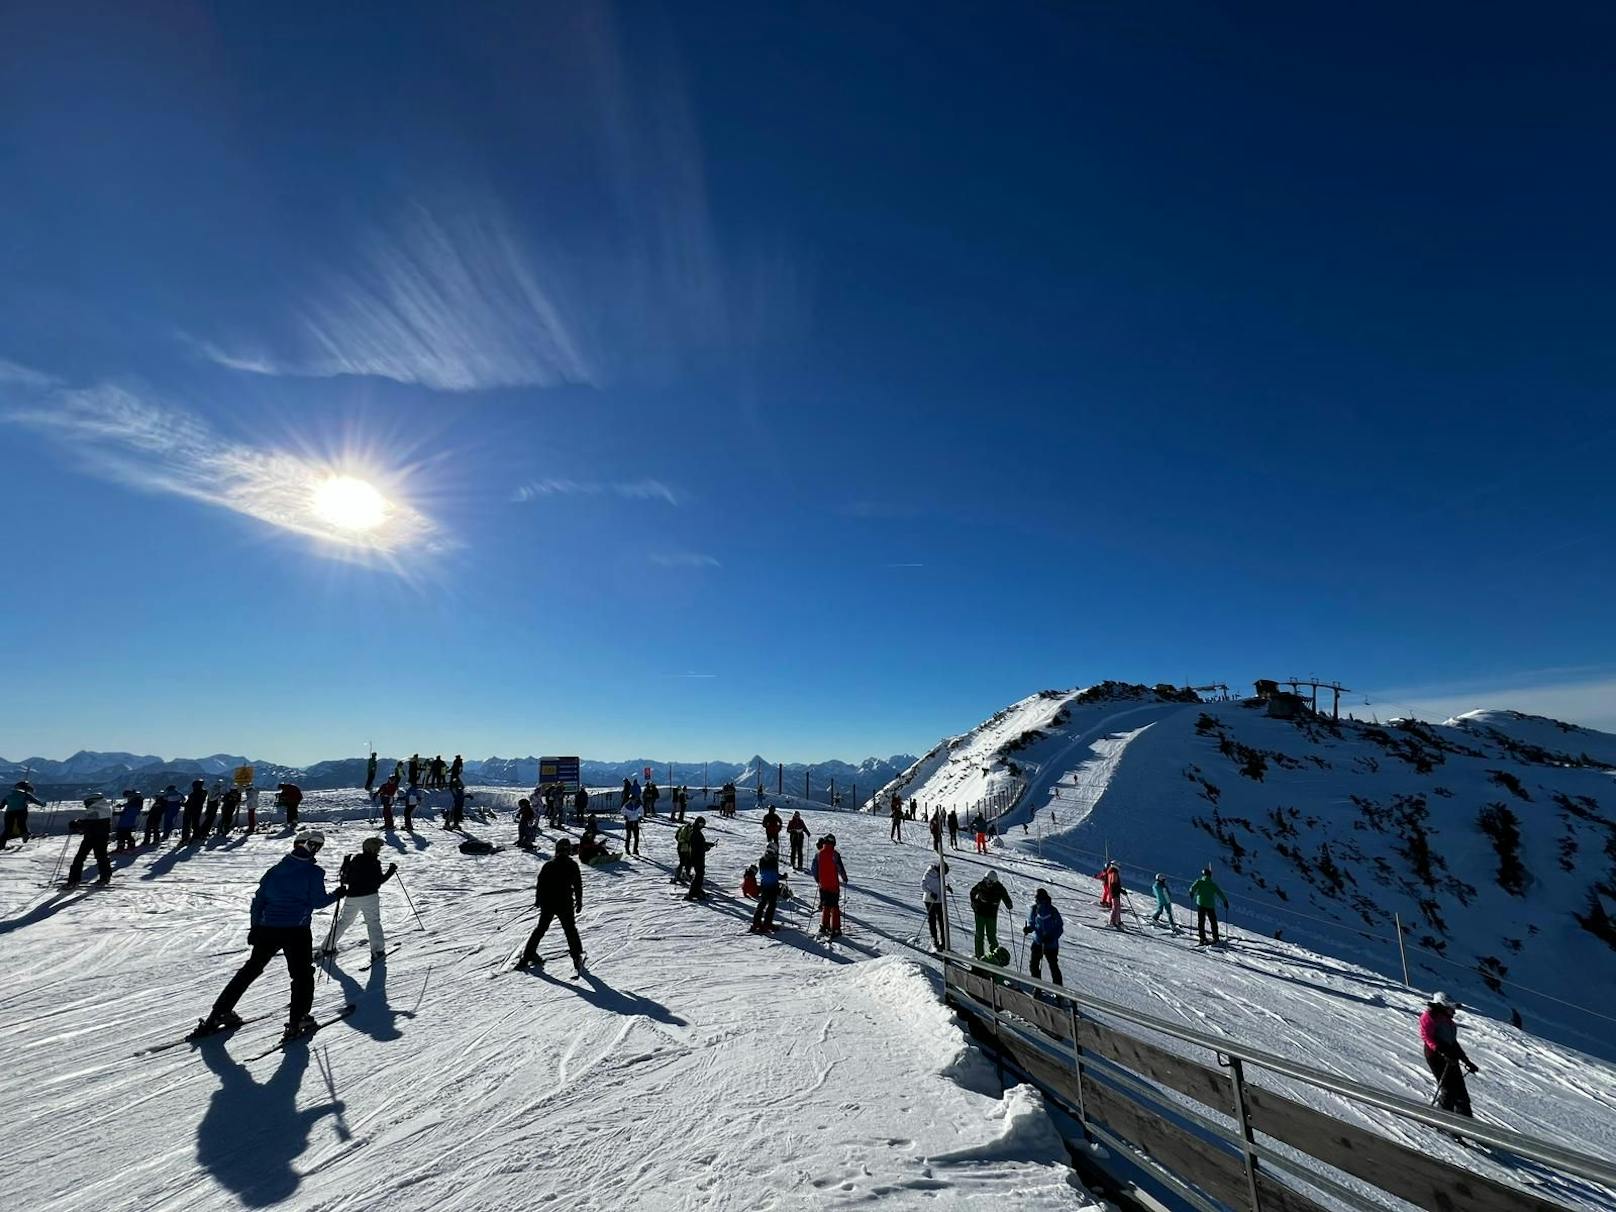 Traumhaftes Wetter und gute Schneelage - die Skigebiete in NÖ sind gut besucht.